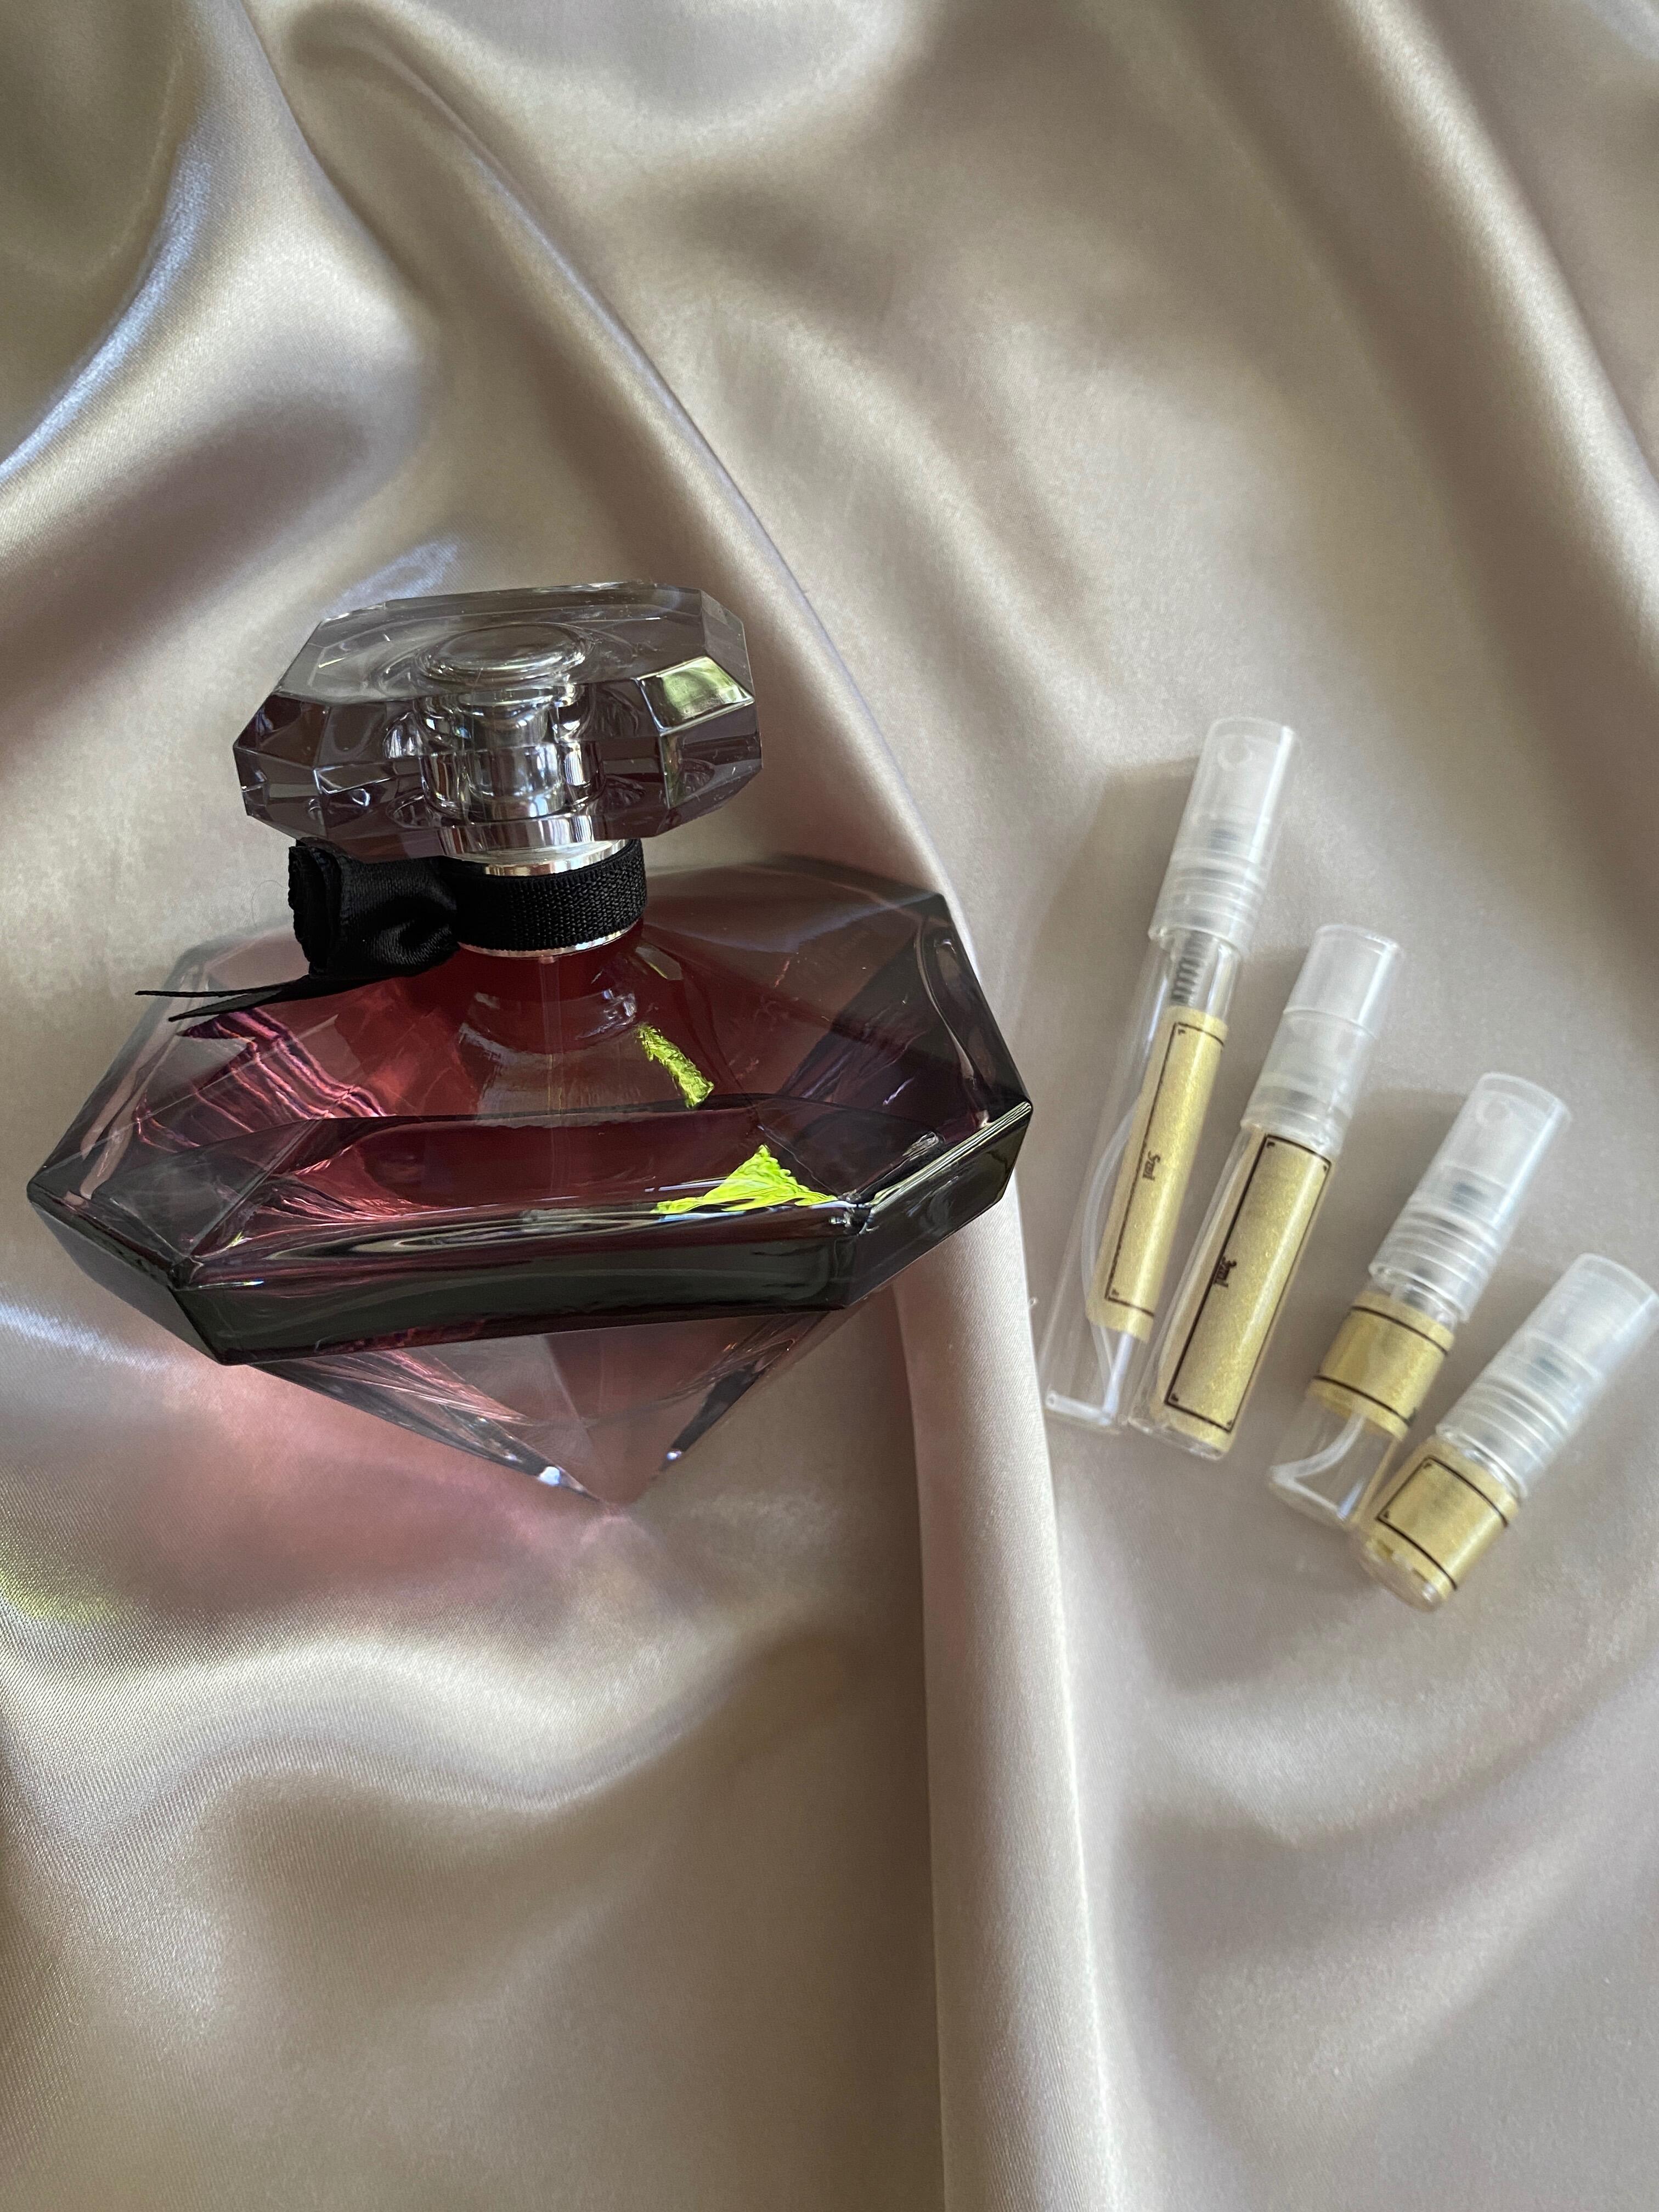 Lancome La Nuit Tresor EDP - The Fragrance Decant Boutique®